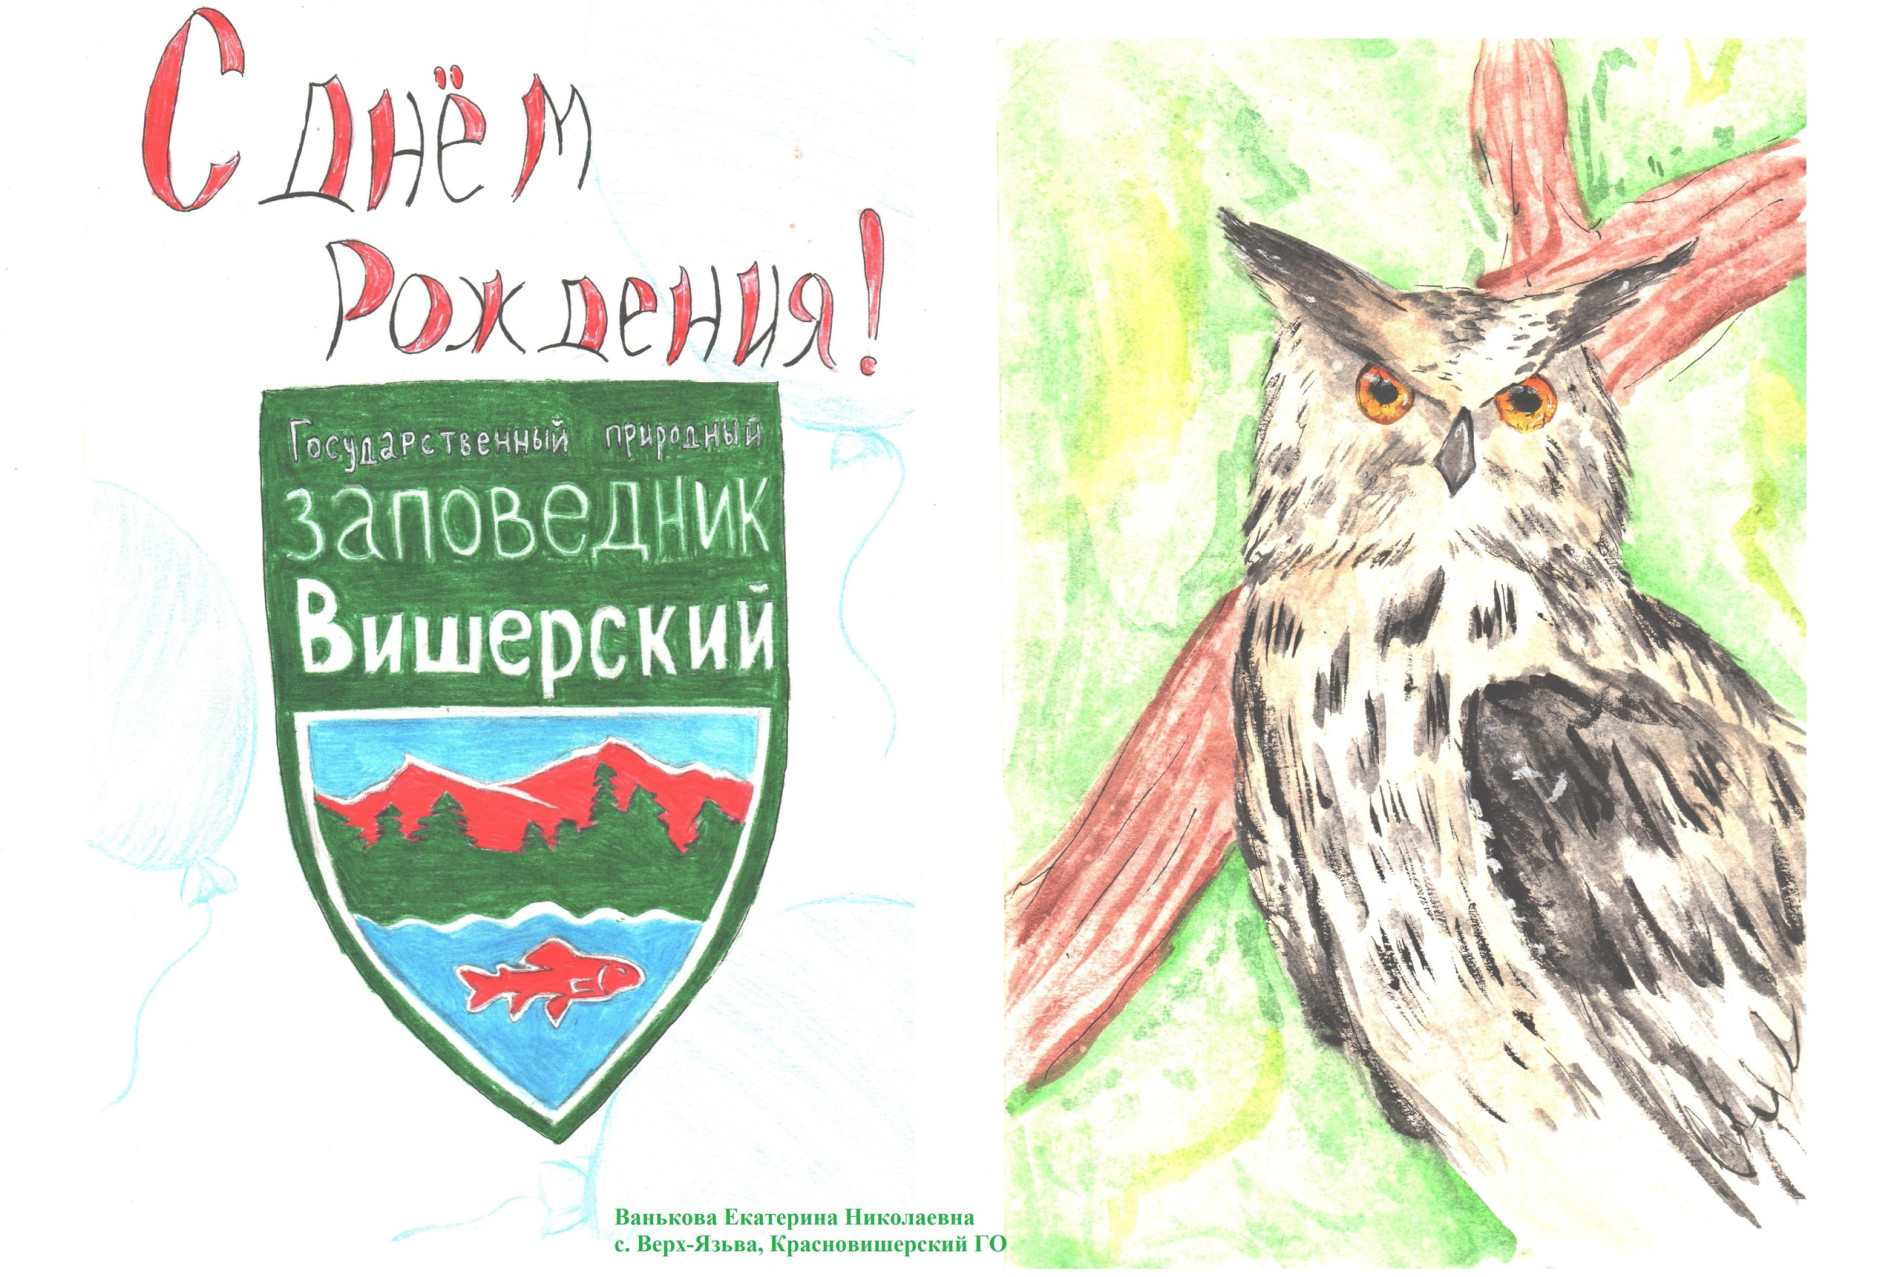 Творческая работа Кати Ваньковой из села Верх-Язьва. Эту открытку Катя прислала нам в прошлом году. 